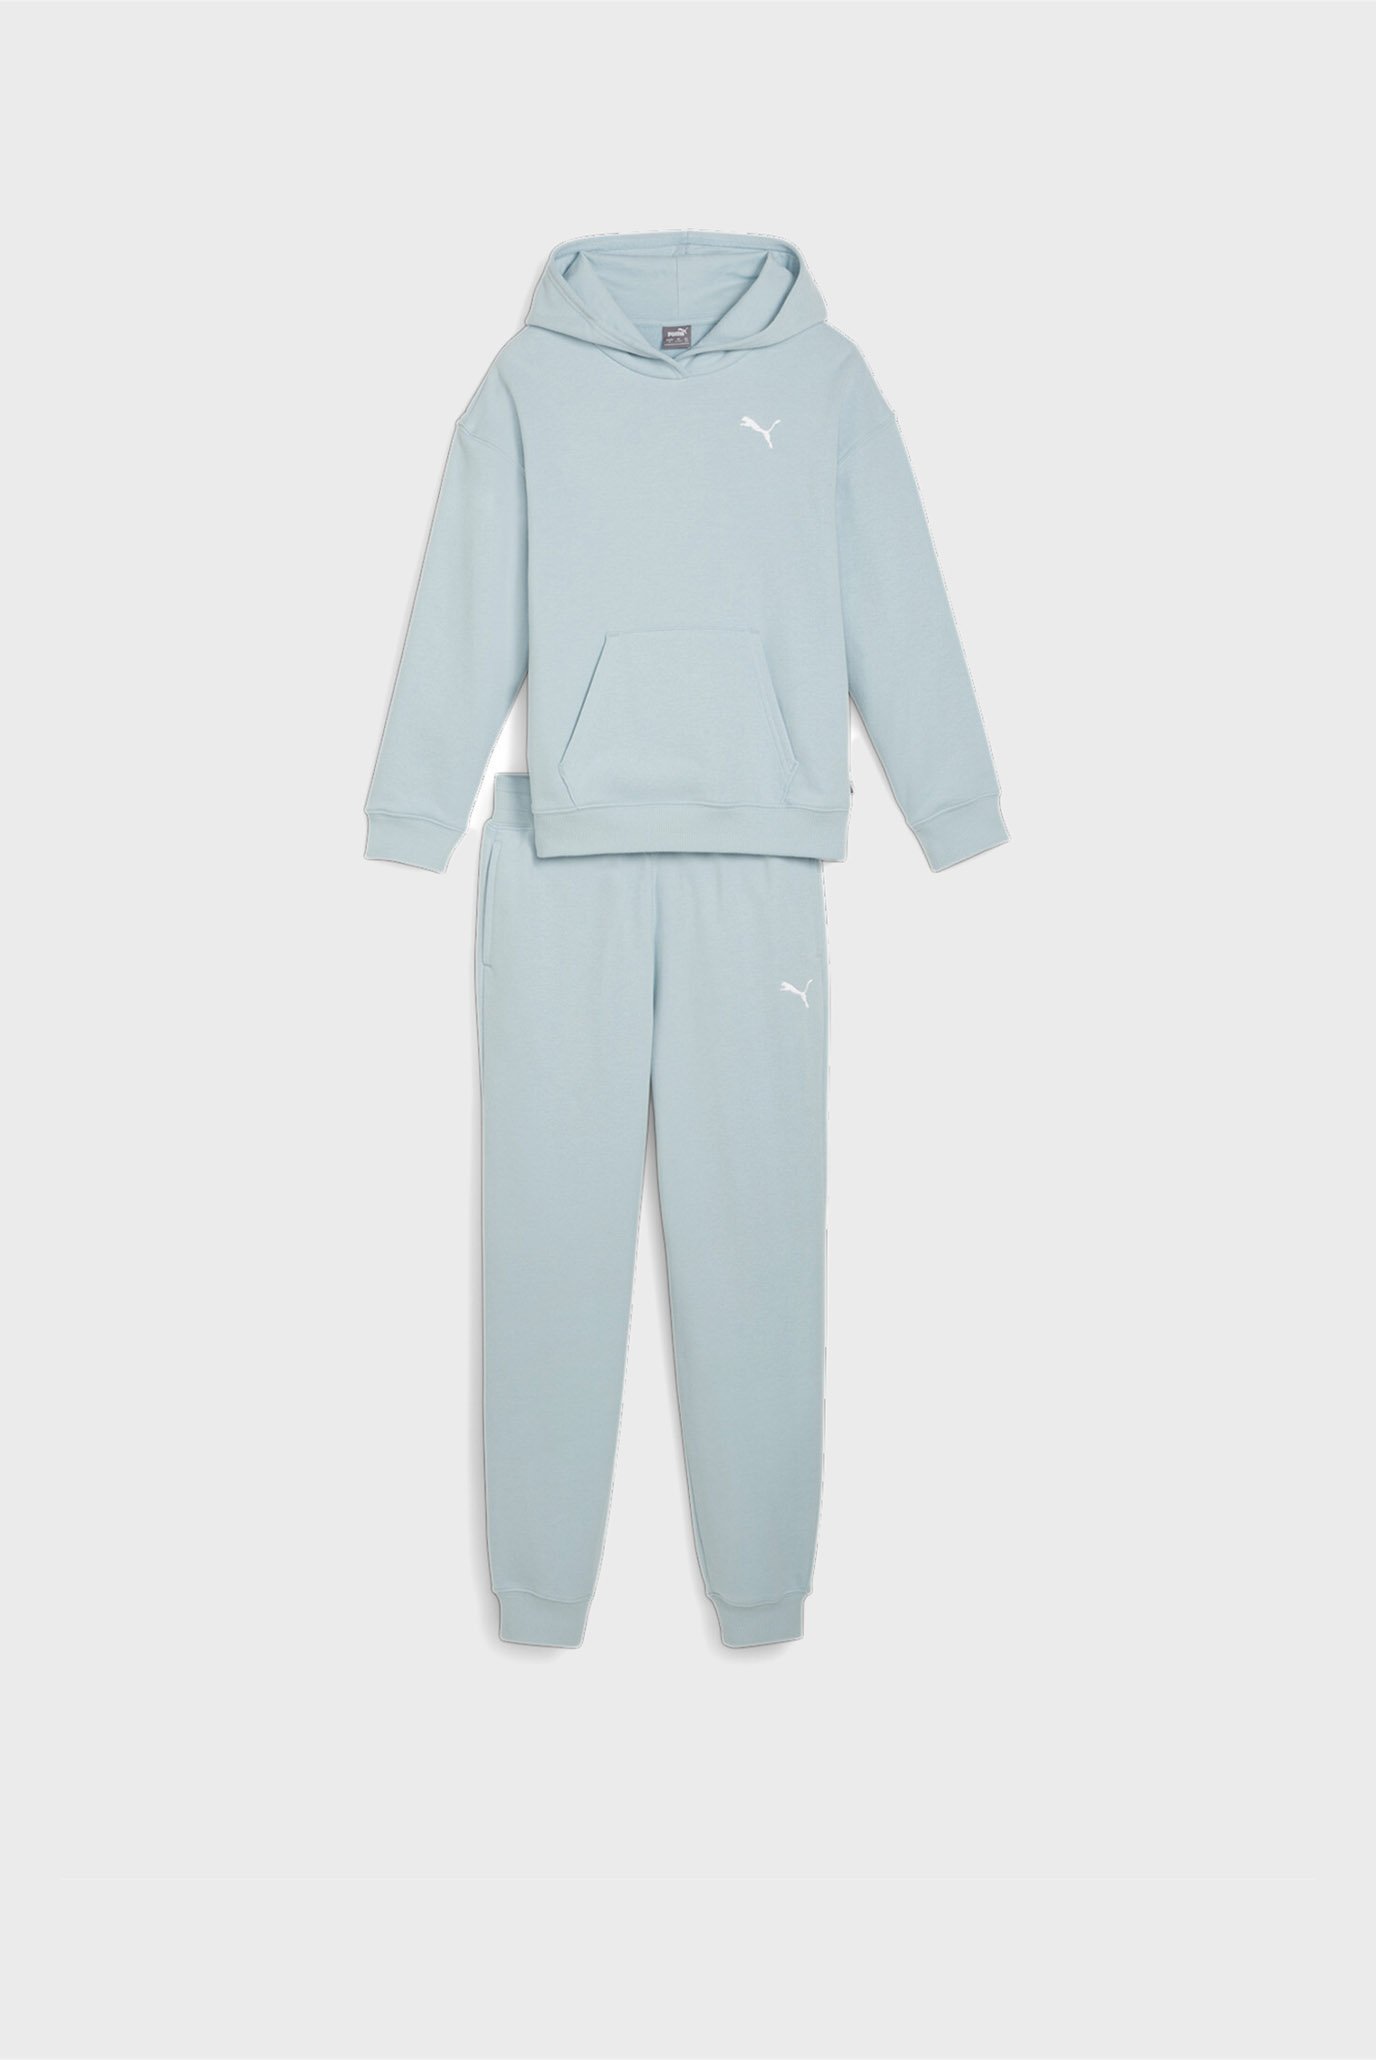 Детский голубой спортивный костюм (худи, брюки) Girls' Loungewear Suit 1